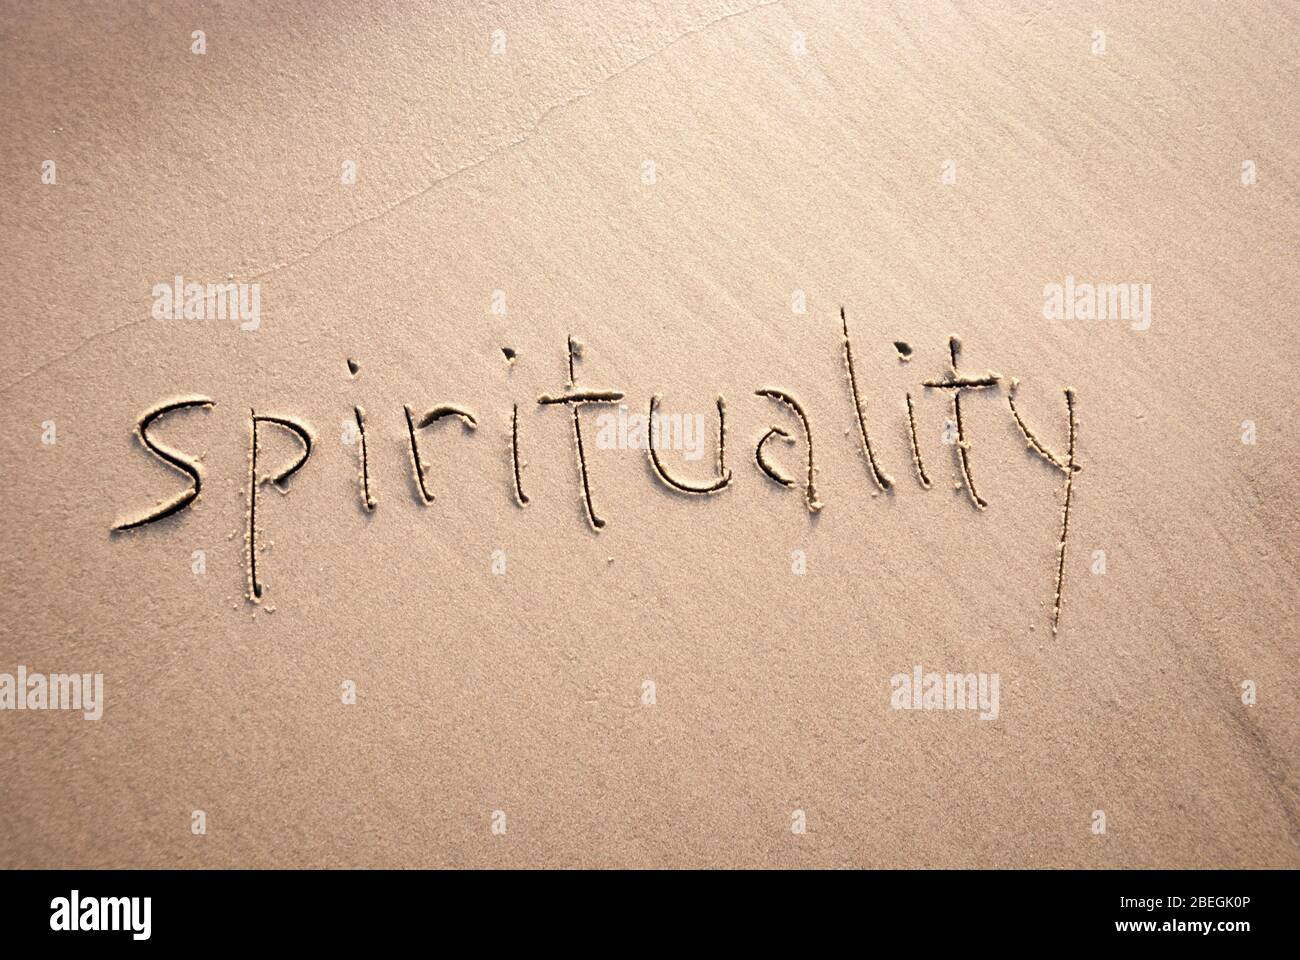 Einfache nicht konfessionelle Spiritualität Nachricht handgeschrieben in Kleinbuchstaben auf texturierten Sandstrand Stockfoto